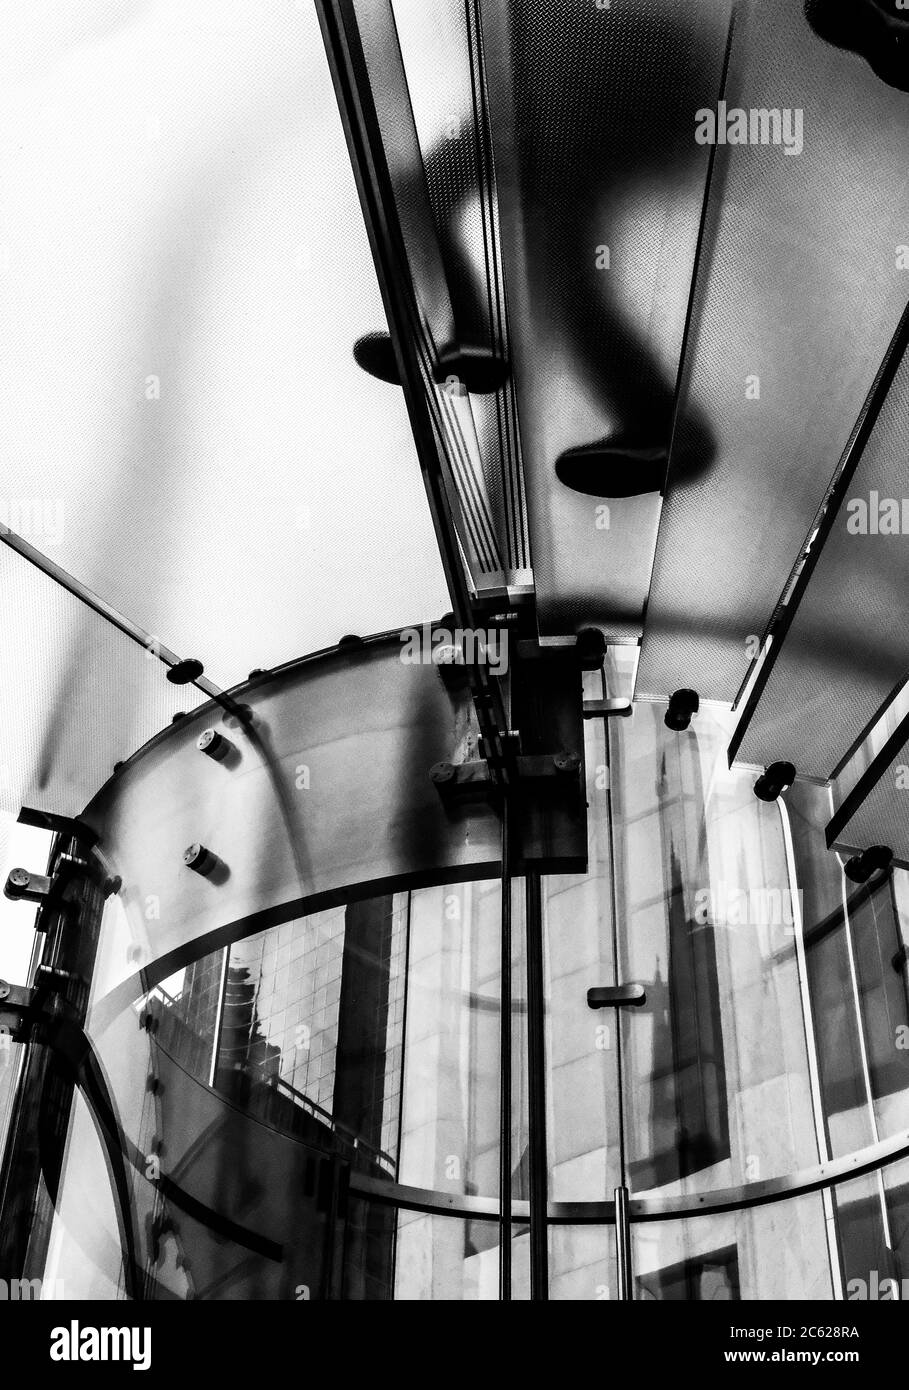 Flaggschiff-Consumer-Telefon, Uhr und Computer-Shop in der Nähe des Central  Park gesehen, mit dem Bild zeigt die berühmte Glastreppe im Geschäft selbst  Stockfotografie - Alamy